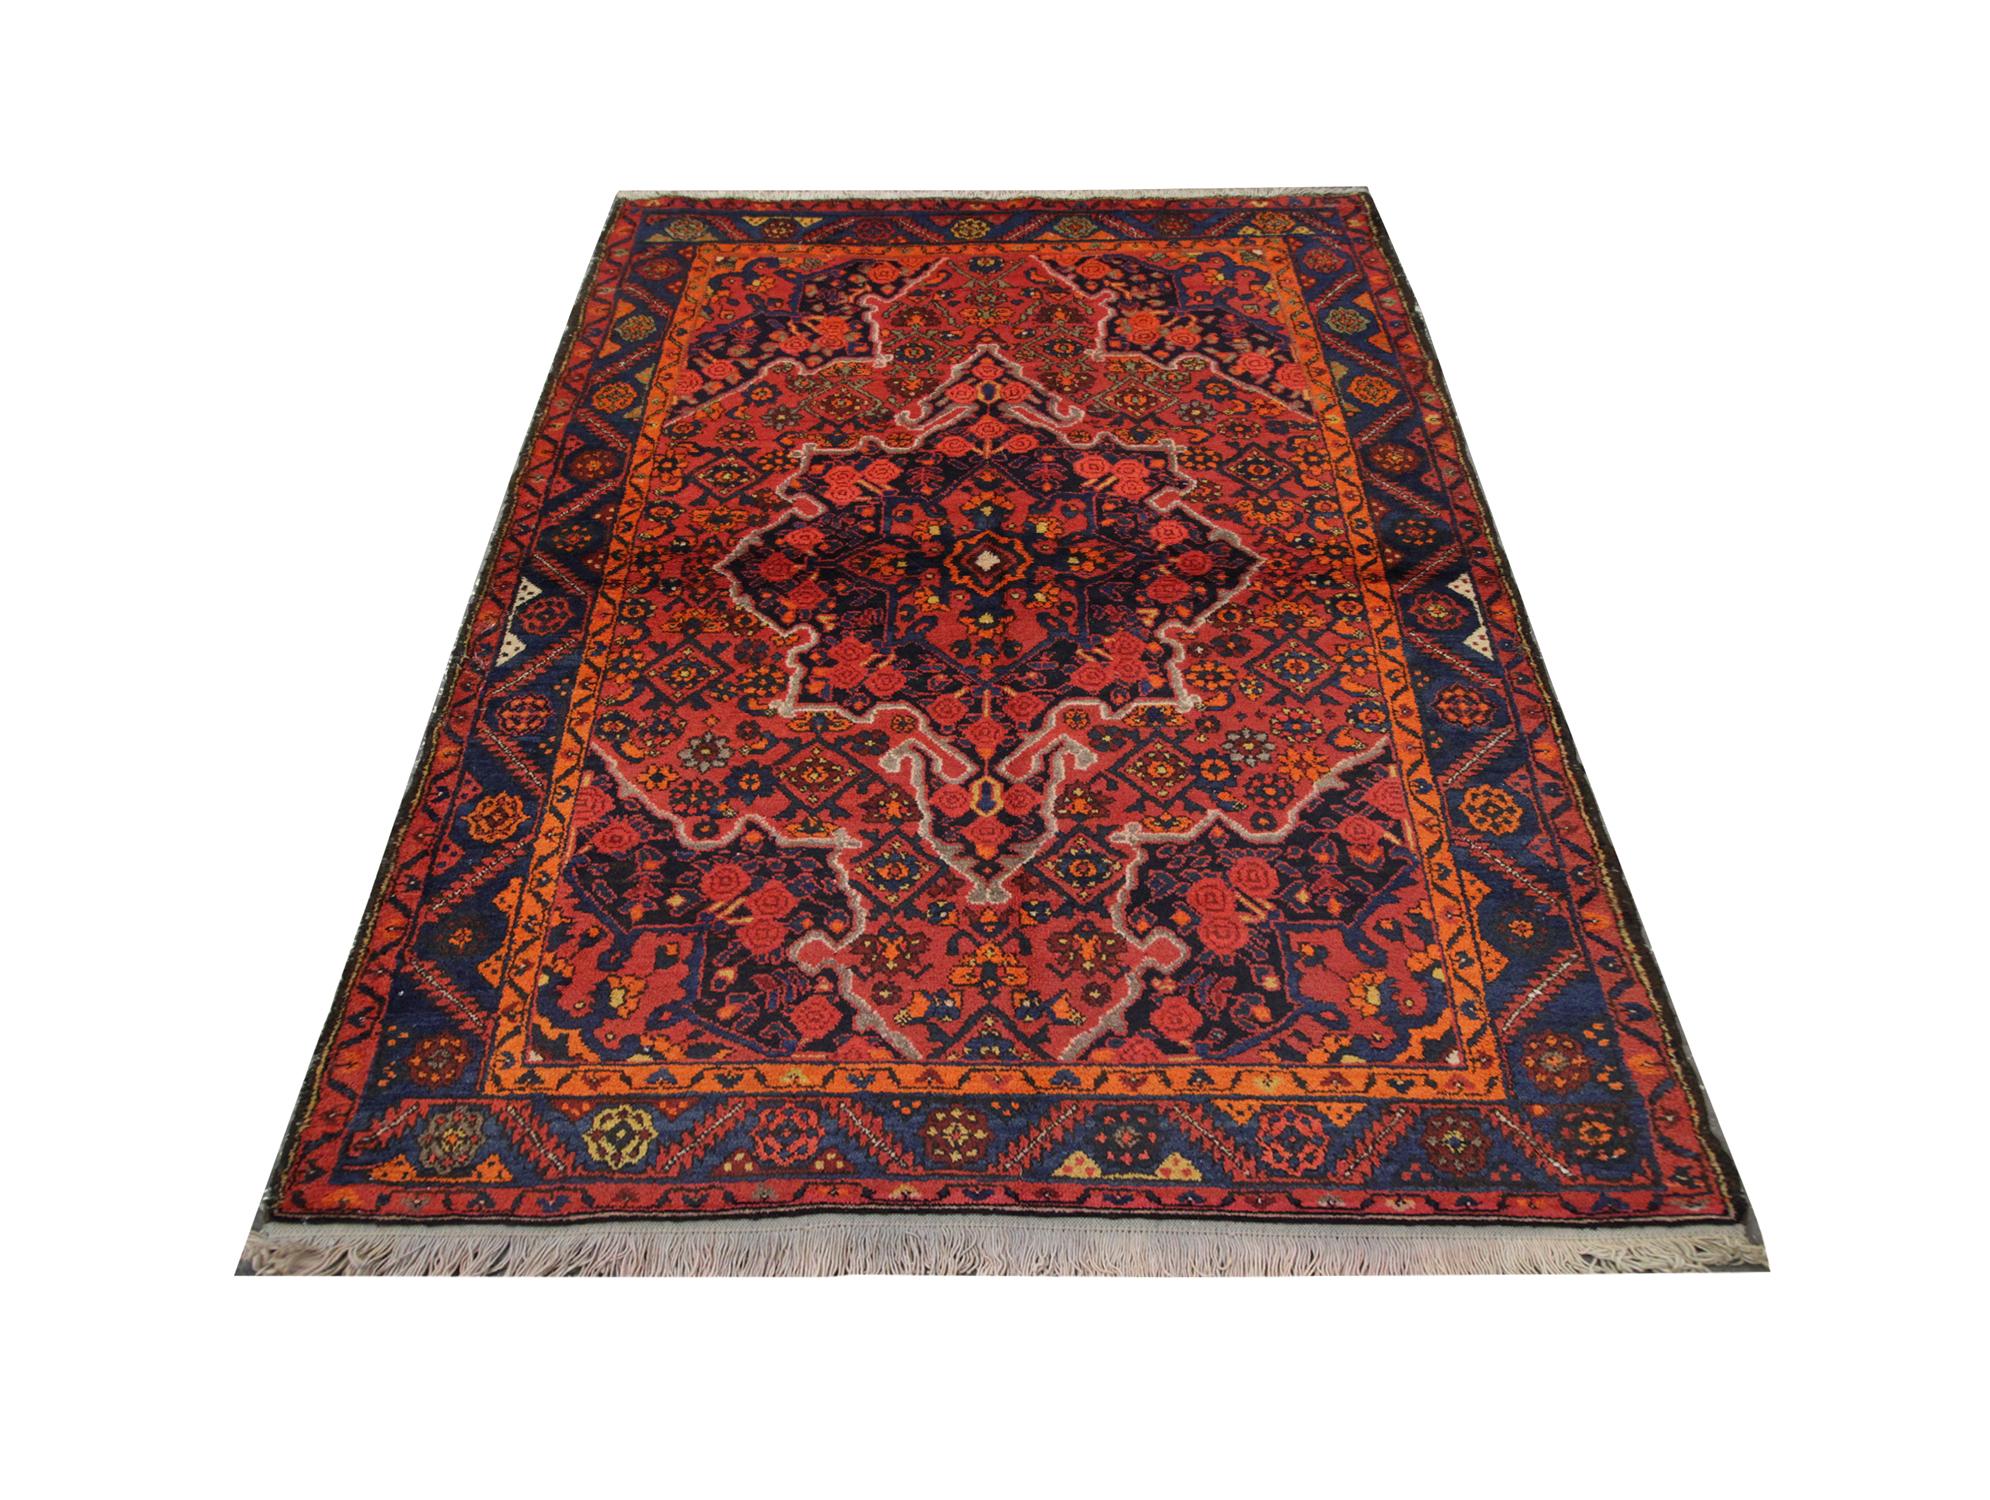 Un tapis fait main aux riches couleurs orange et rouge recouvre ce tapis Karabagh ancien de haute qualité. Tissé à la main en 1950 avec de la laine et du coton filés à la main et teints en vert, par certains des meilleurs artisans caucasiens. Ce